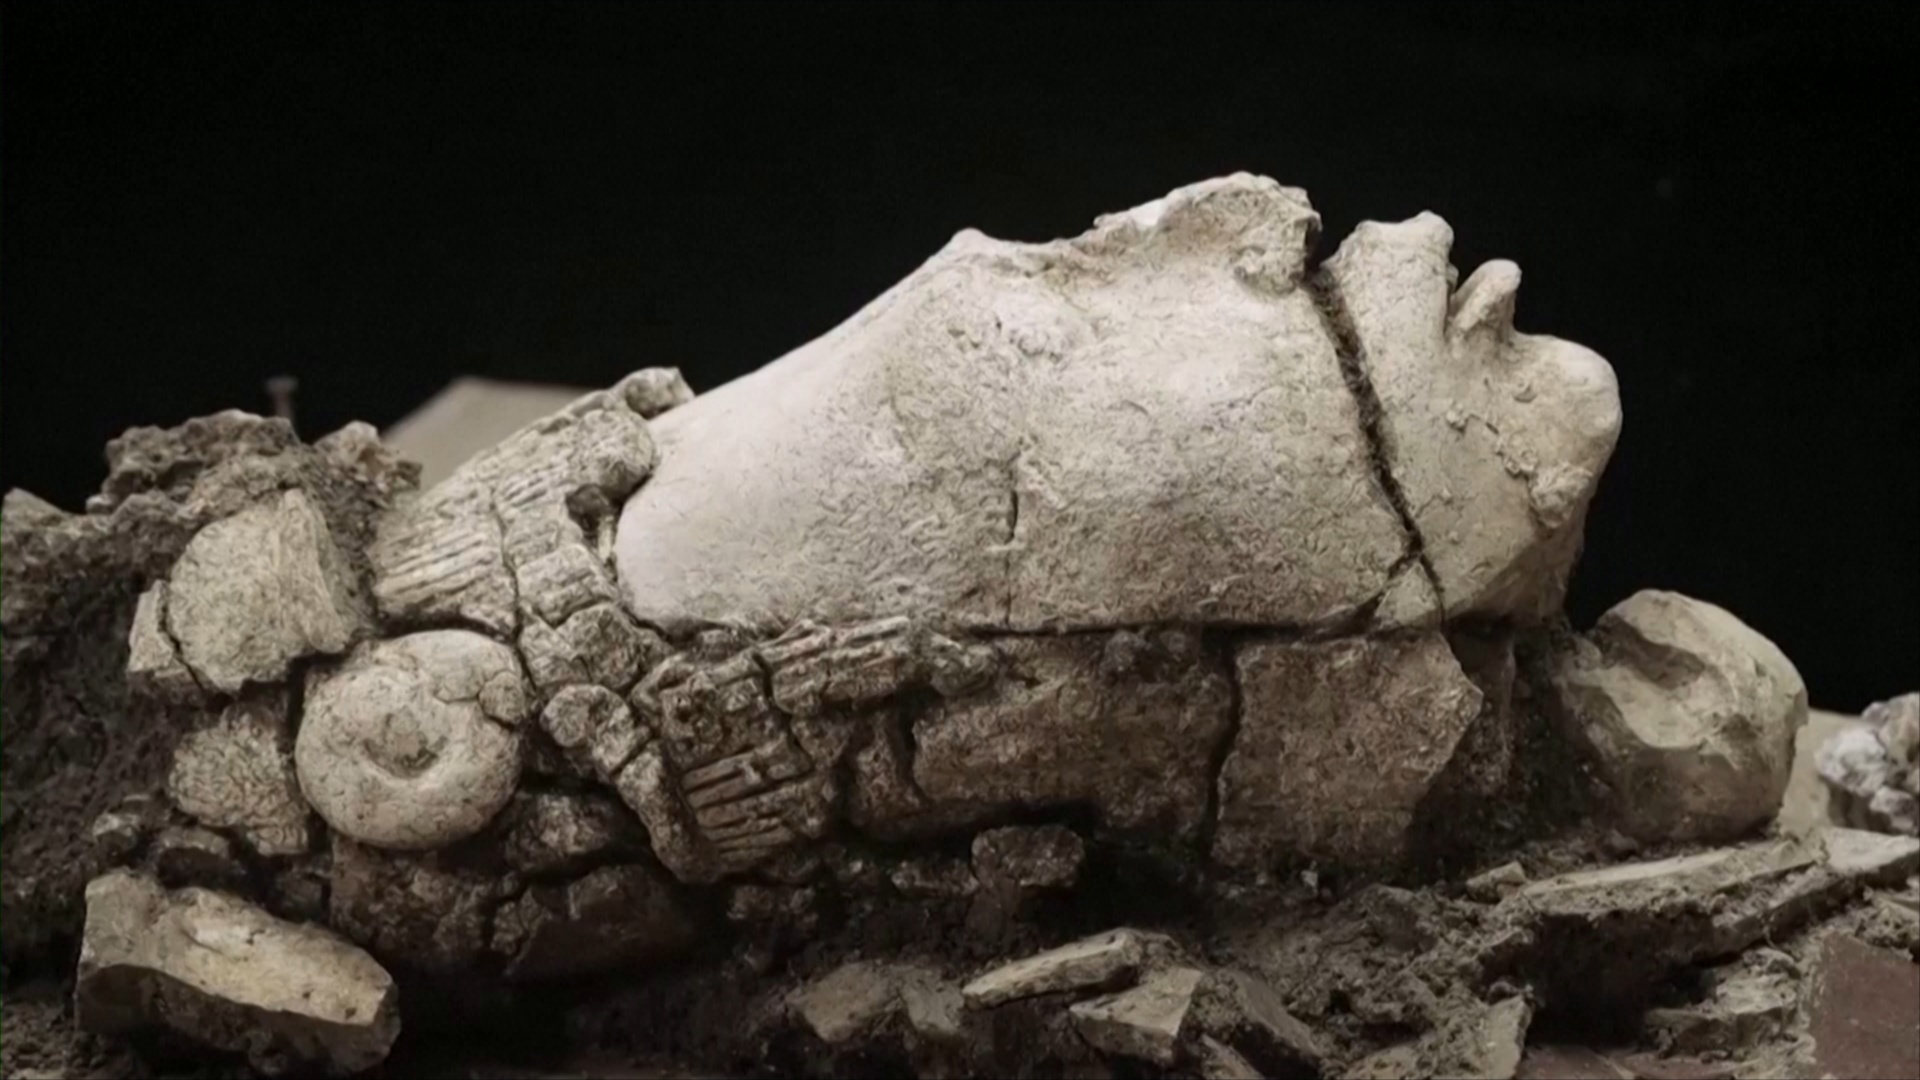 В мексиканском Паленке нашли каменную голову бога кукурузы